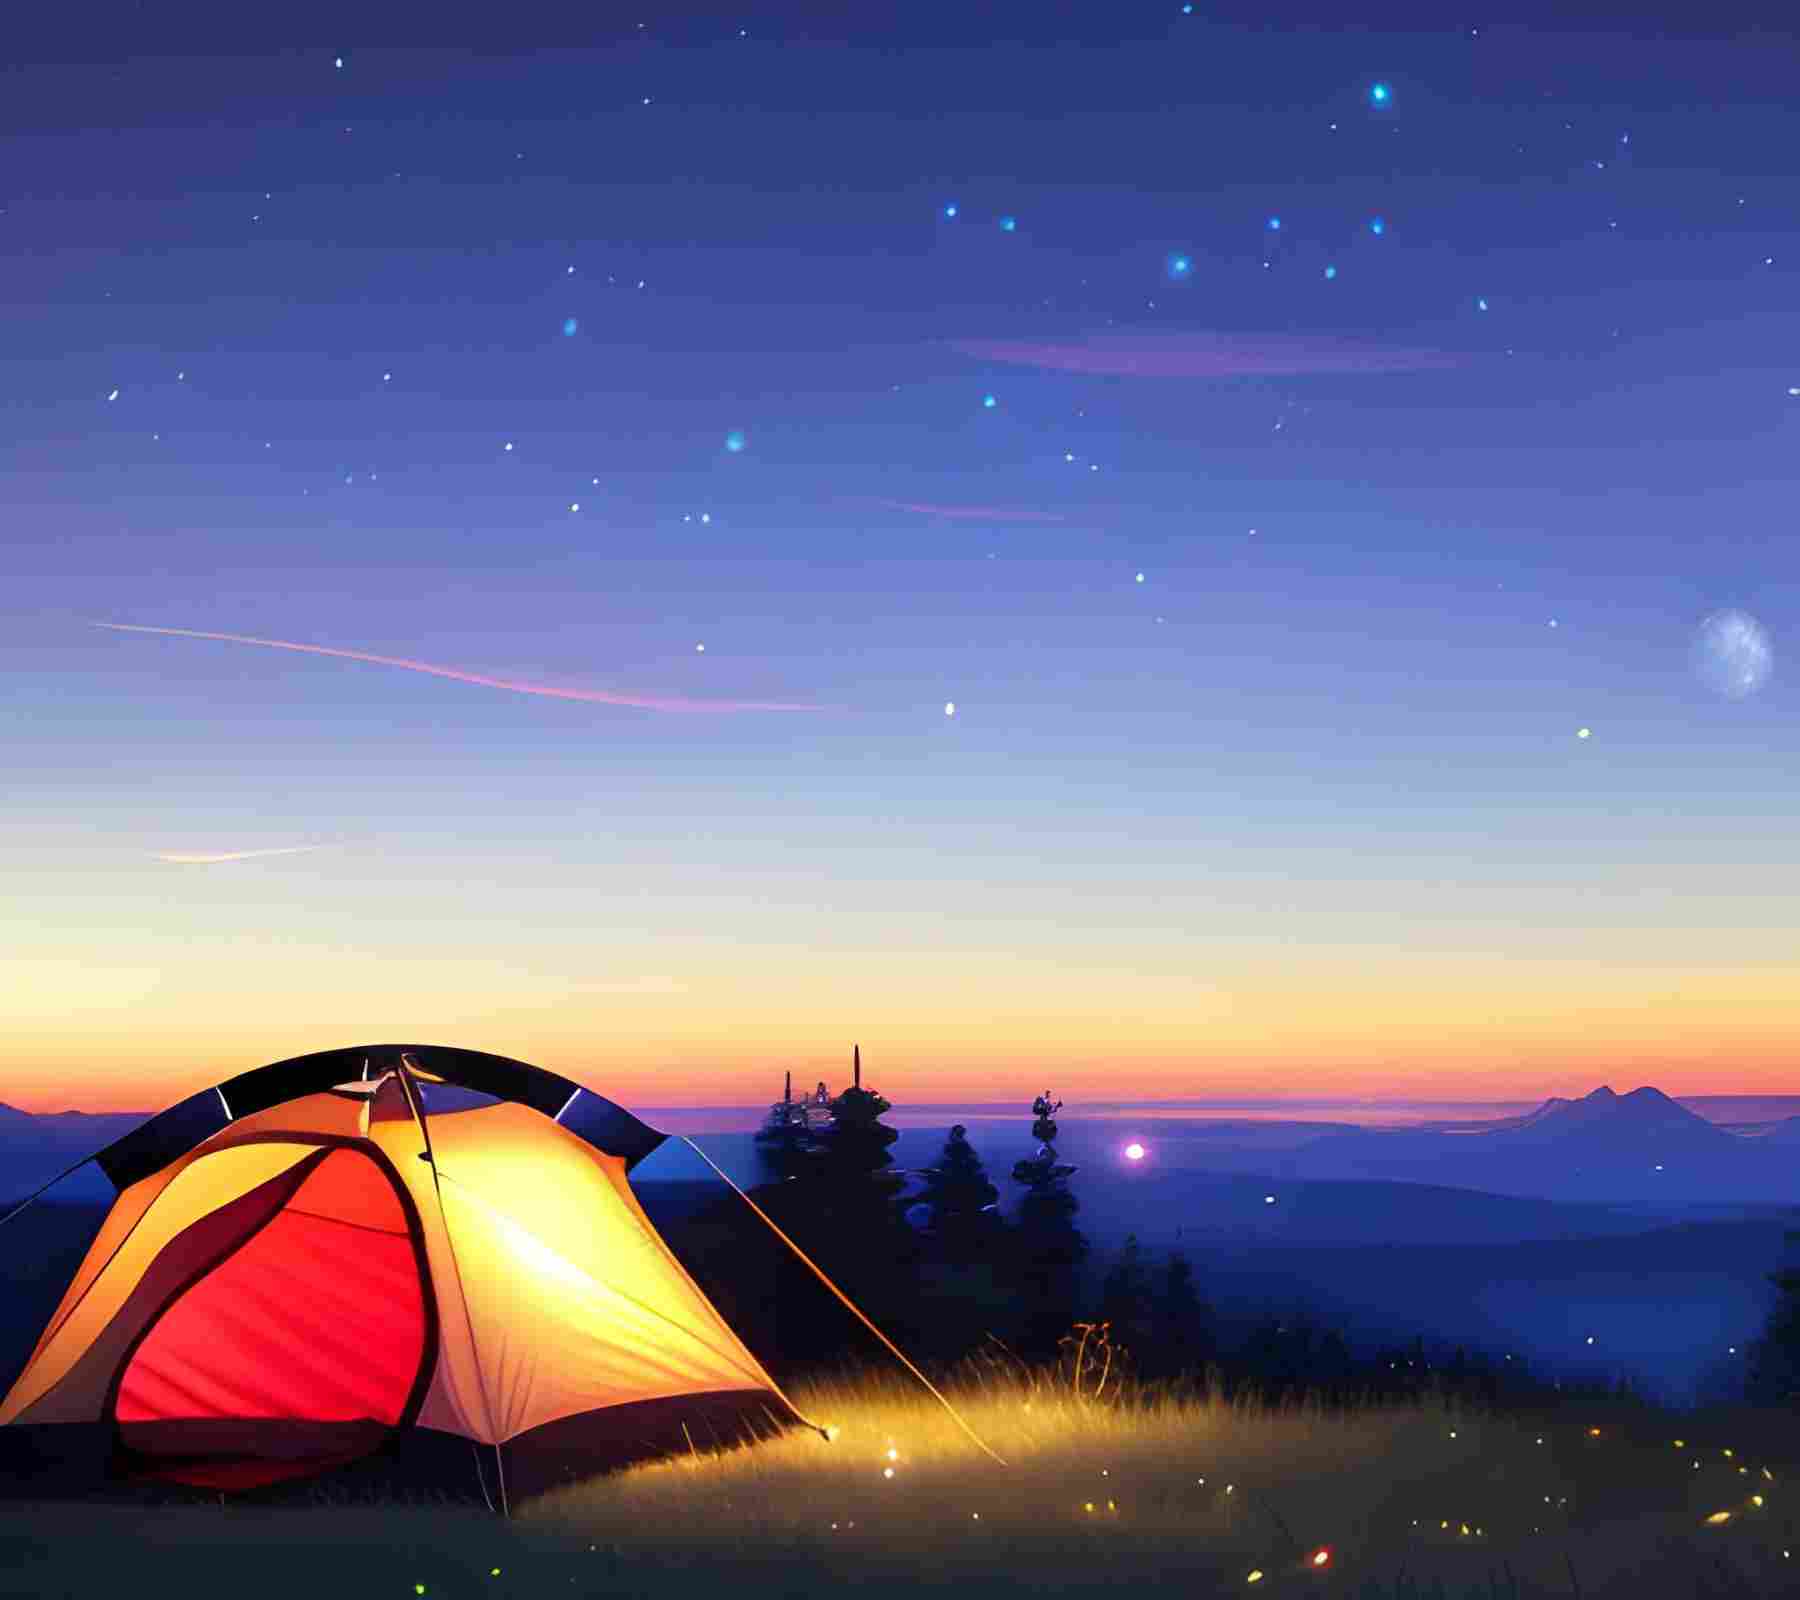 Toxic Camping Tents at Sunset